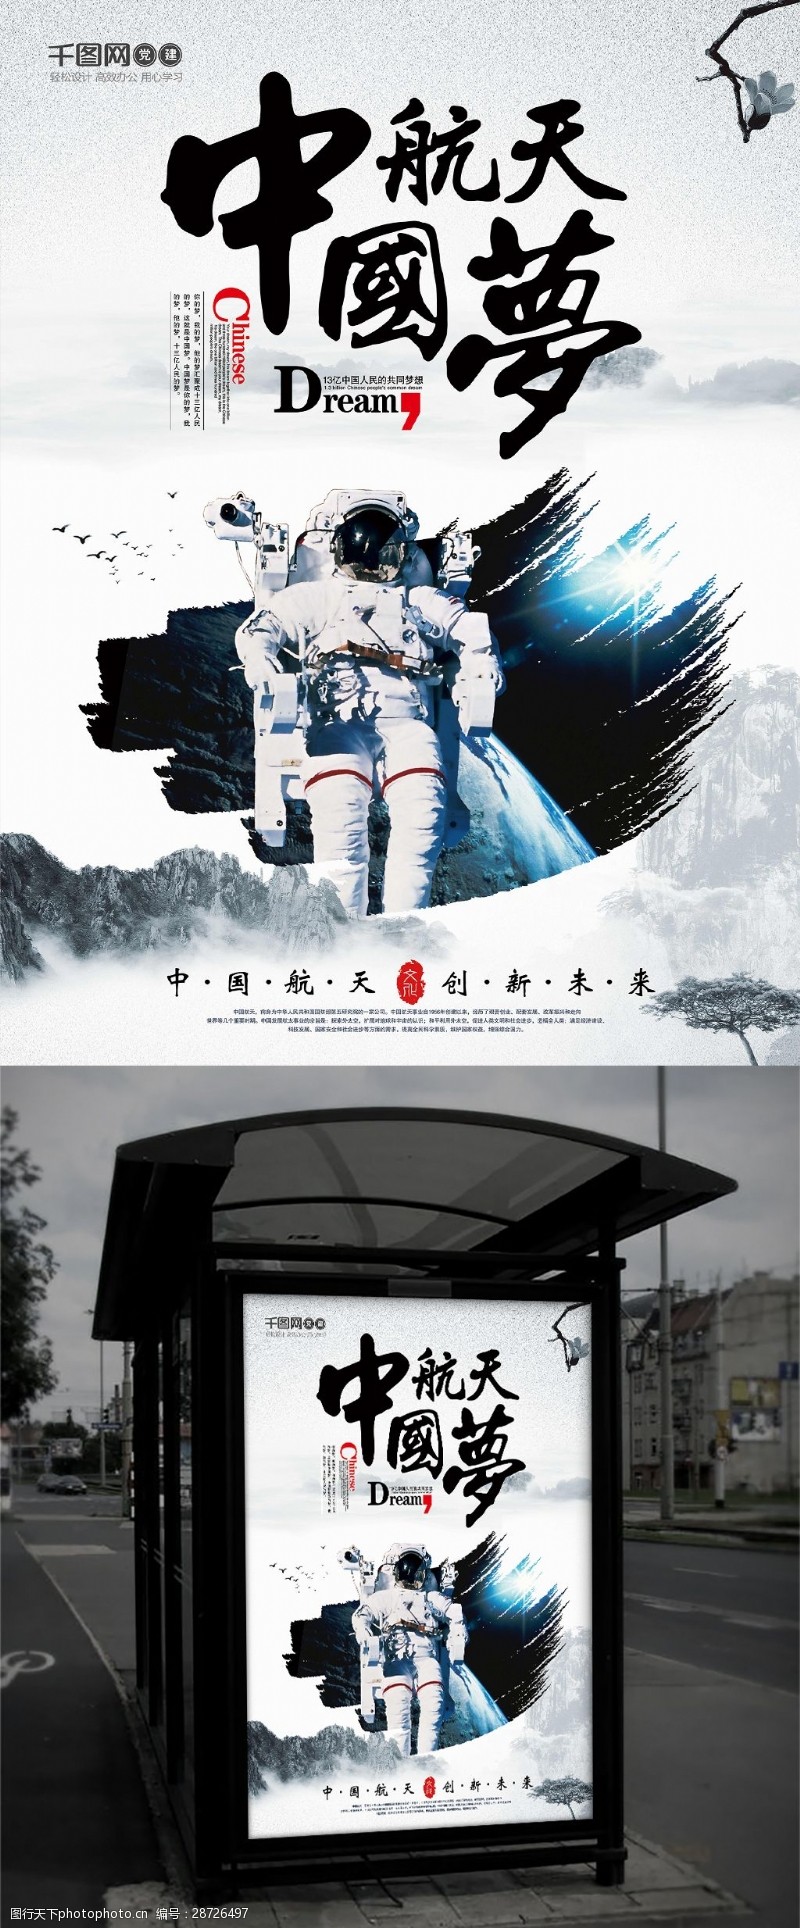 强国梦水墨风格创意中国航天梦中国梦海报设计